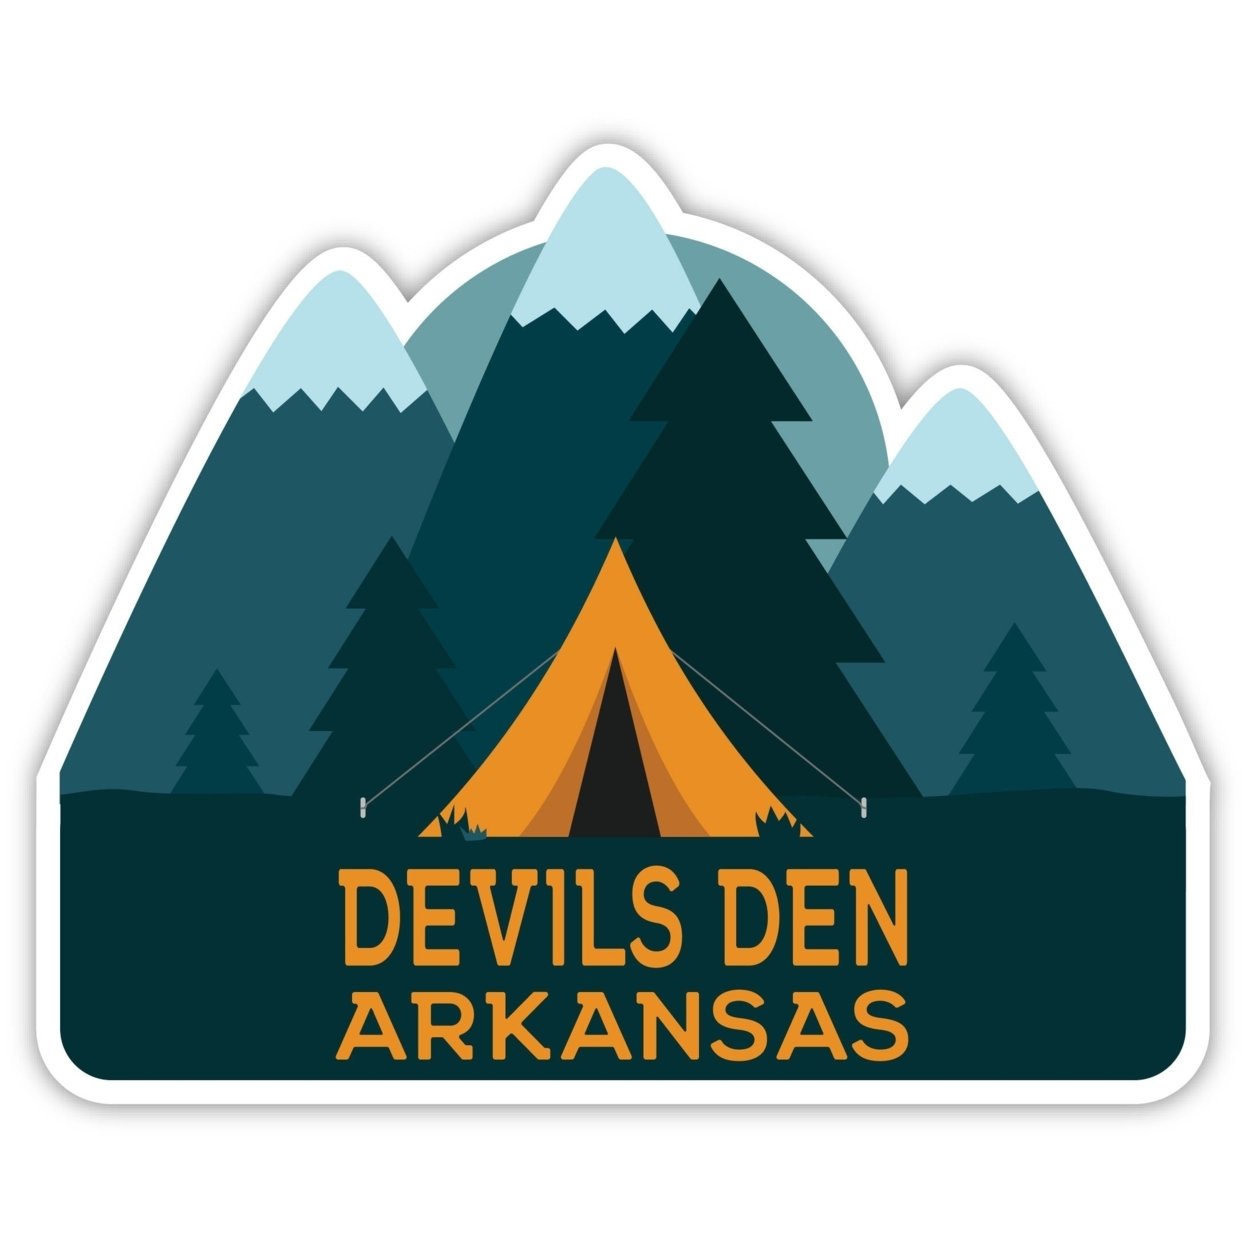 Devils Den Arkansas Souvenir Decorative Stickers (Choose Theme And Size) - 4-Pack, 8-Inch, Tent